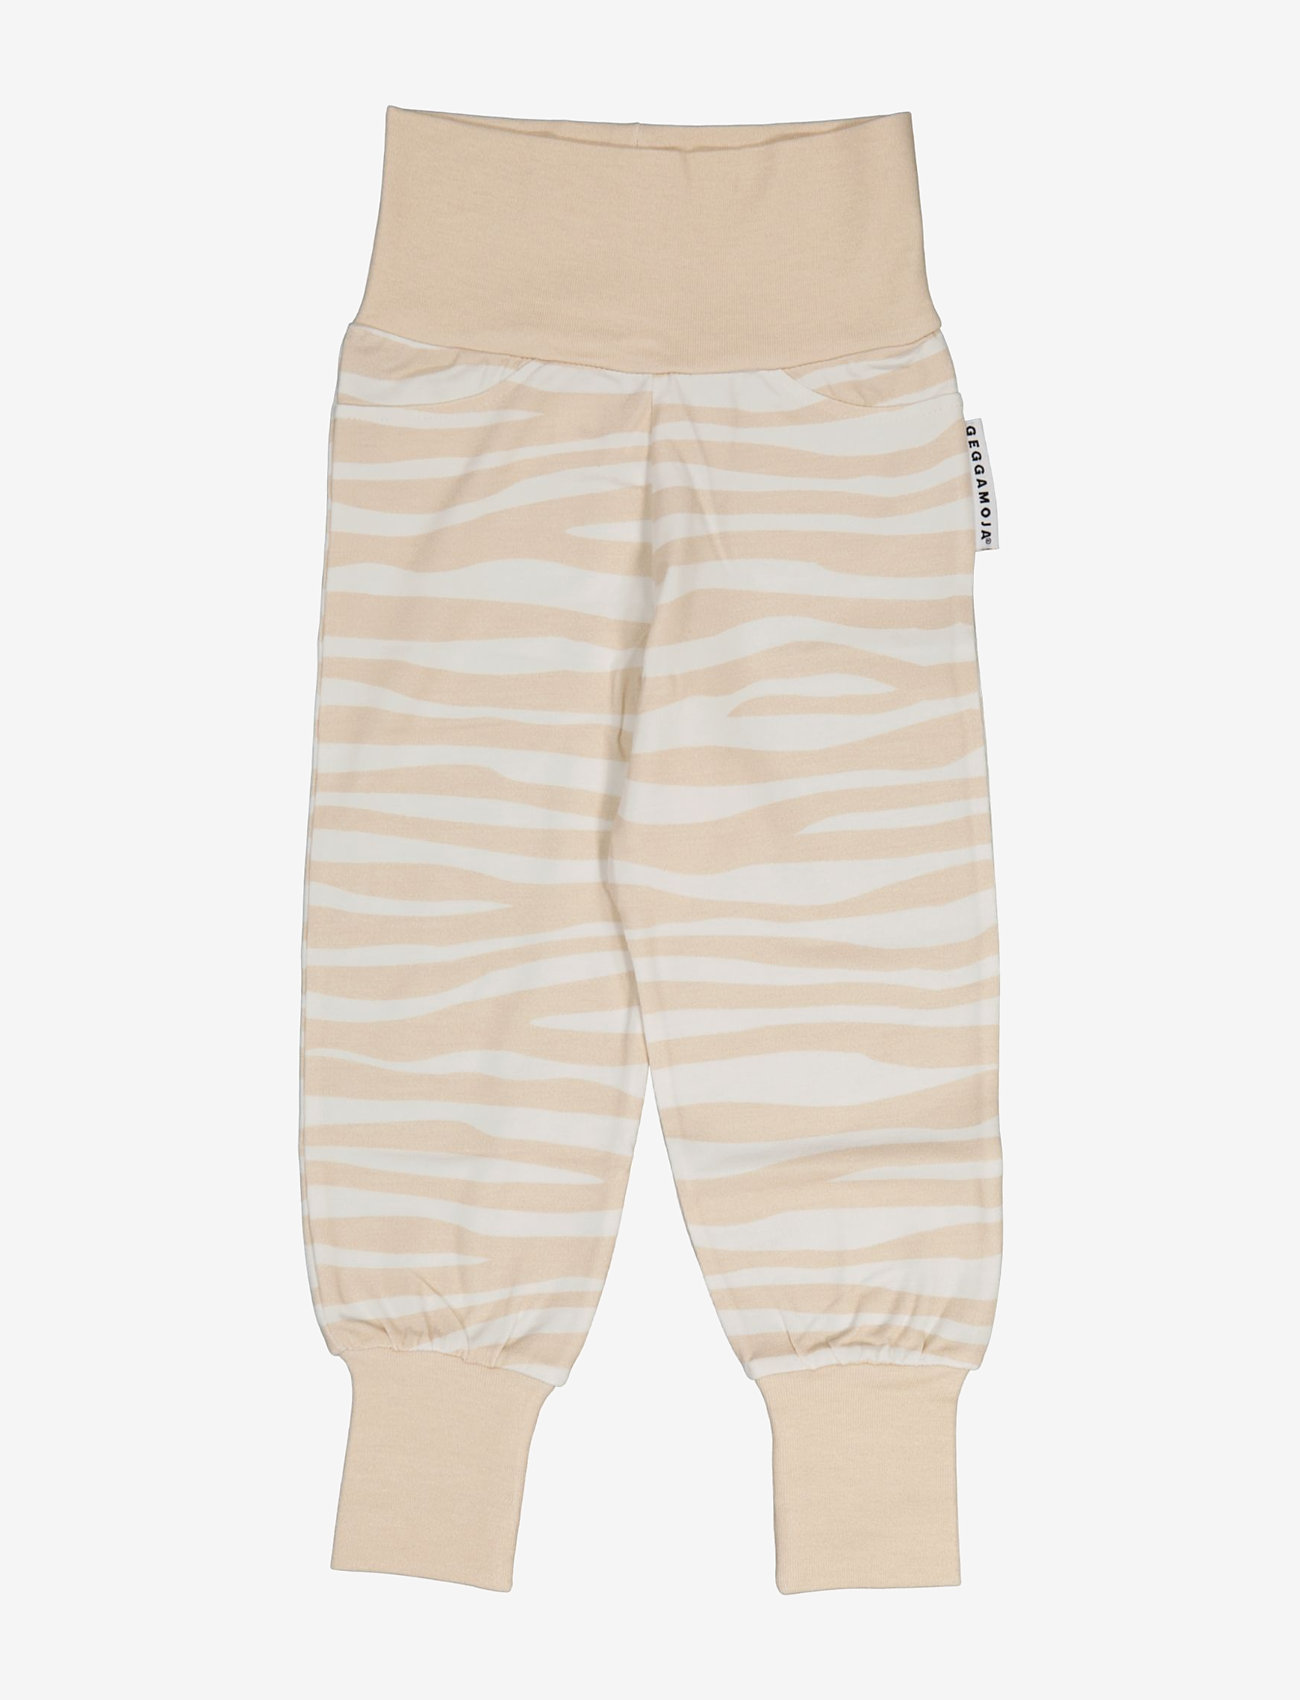 Geggamoja - Bamboo baby pants - kesälöytöjä - beige zebra - 0